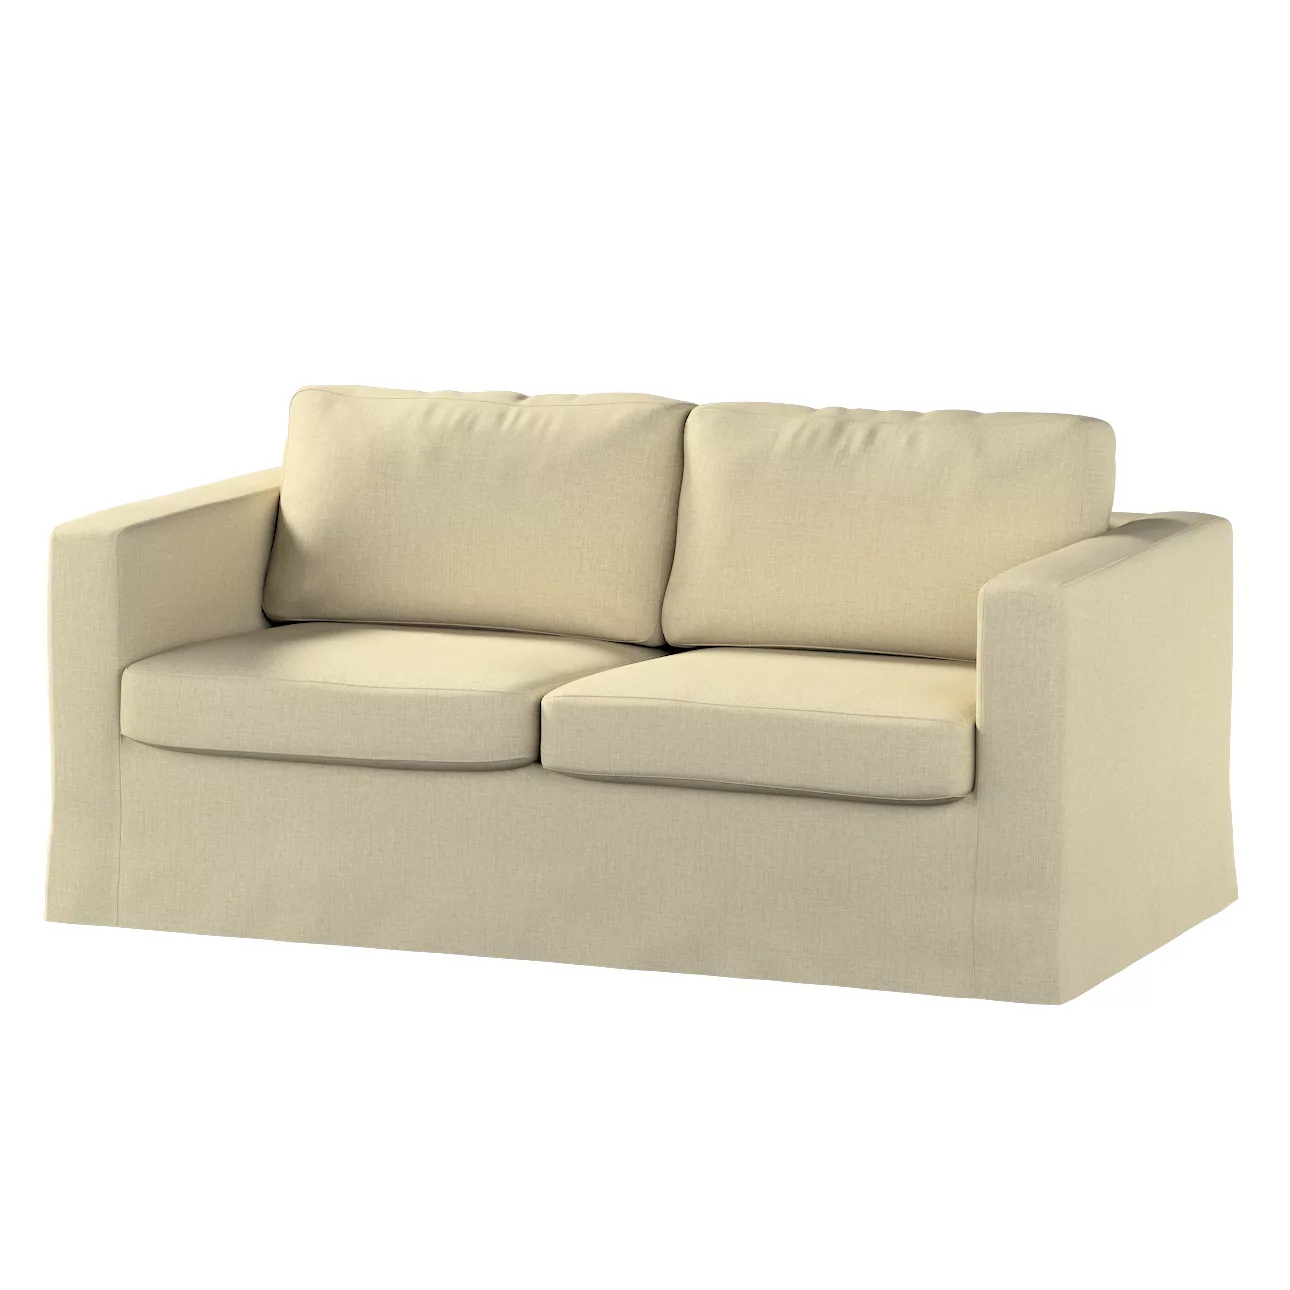 Bezug für Karlstad 2-Sitzer Sofa nicht ausklappbar, lang, olivgrün-creme, S günstig online kaufen